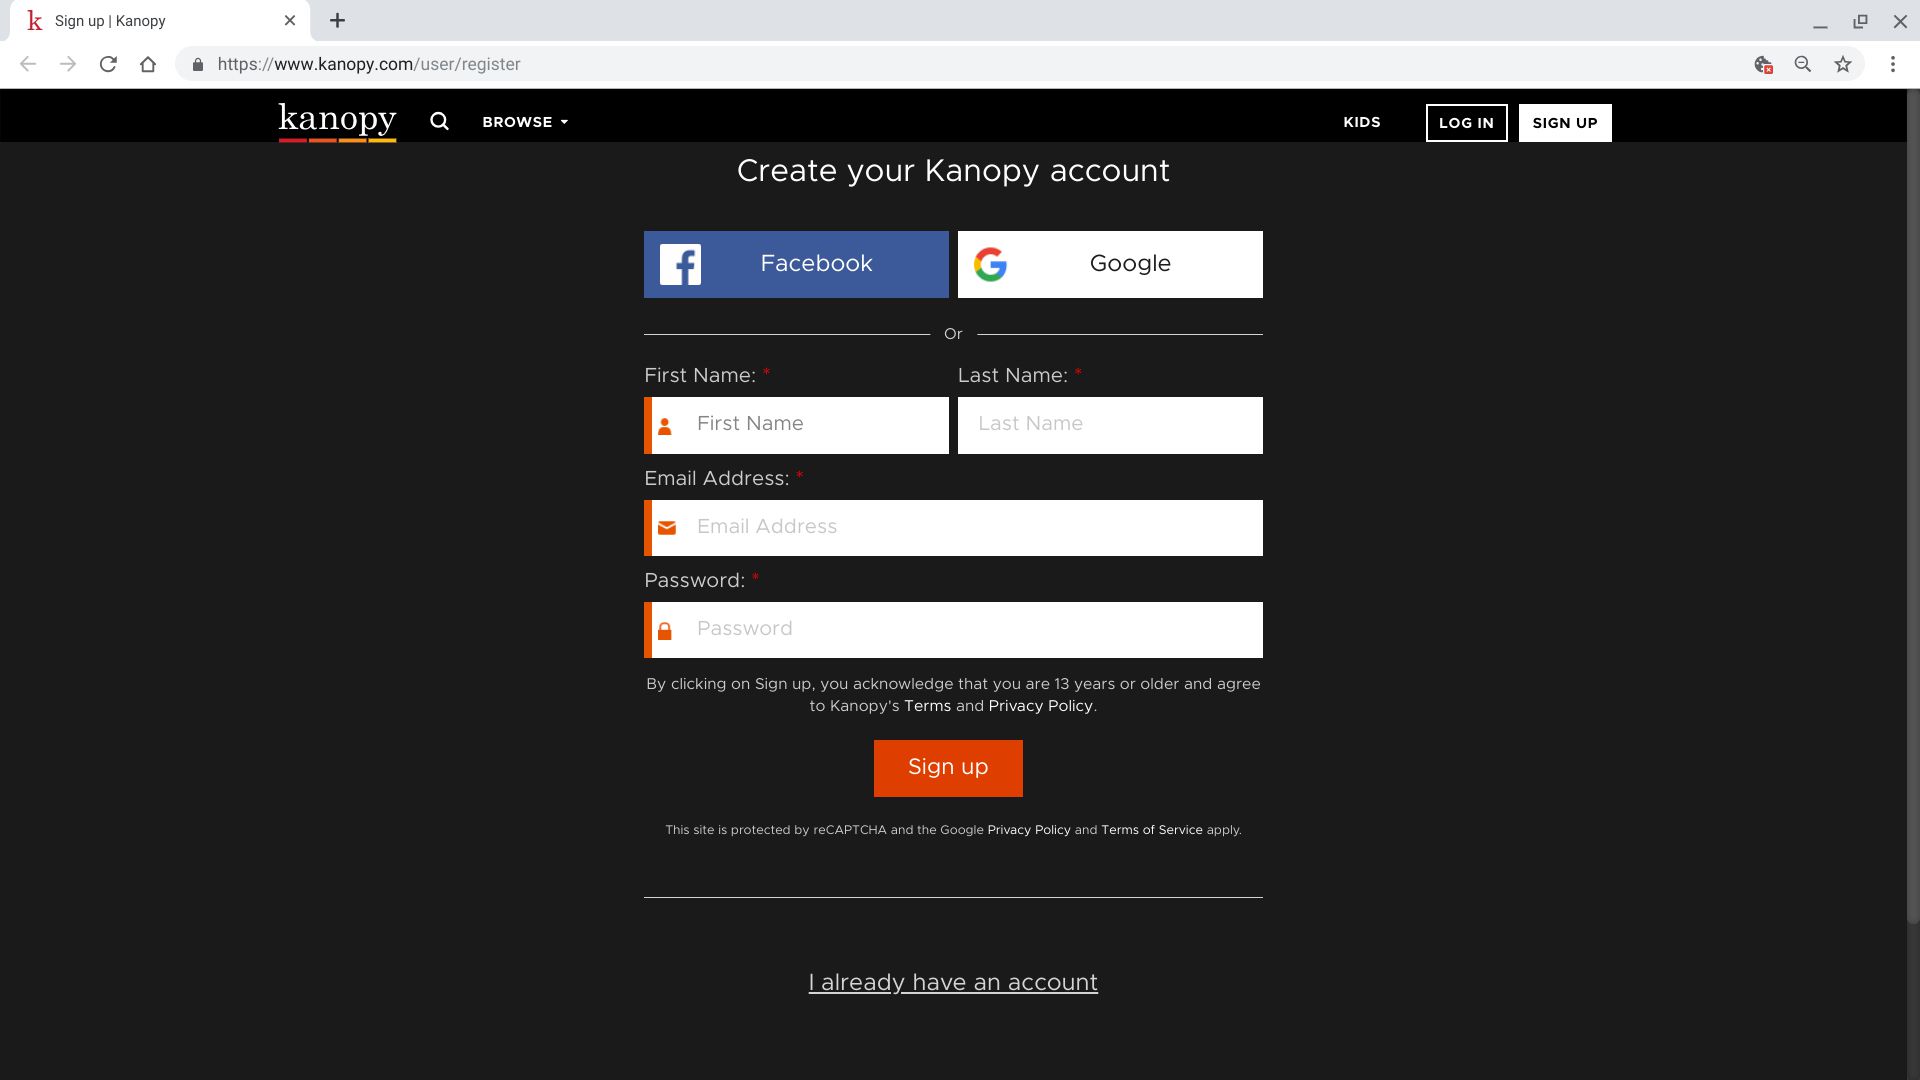 Screenshot z registrační stránky Kanopy.com;  zobrazuje možnosti přihlášení k účtu Facebook a Google spolu s polem křestního jména, příjmení, e-mailové adresy a hesla a tlačítka „Zaregistrovat“